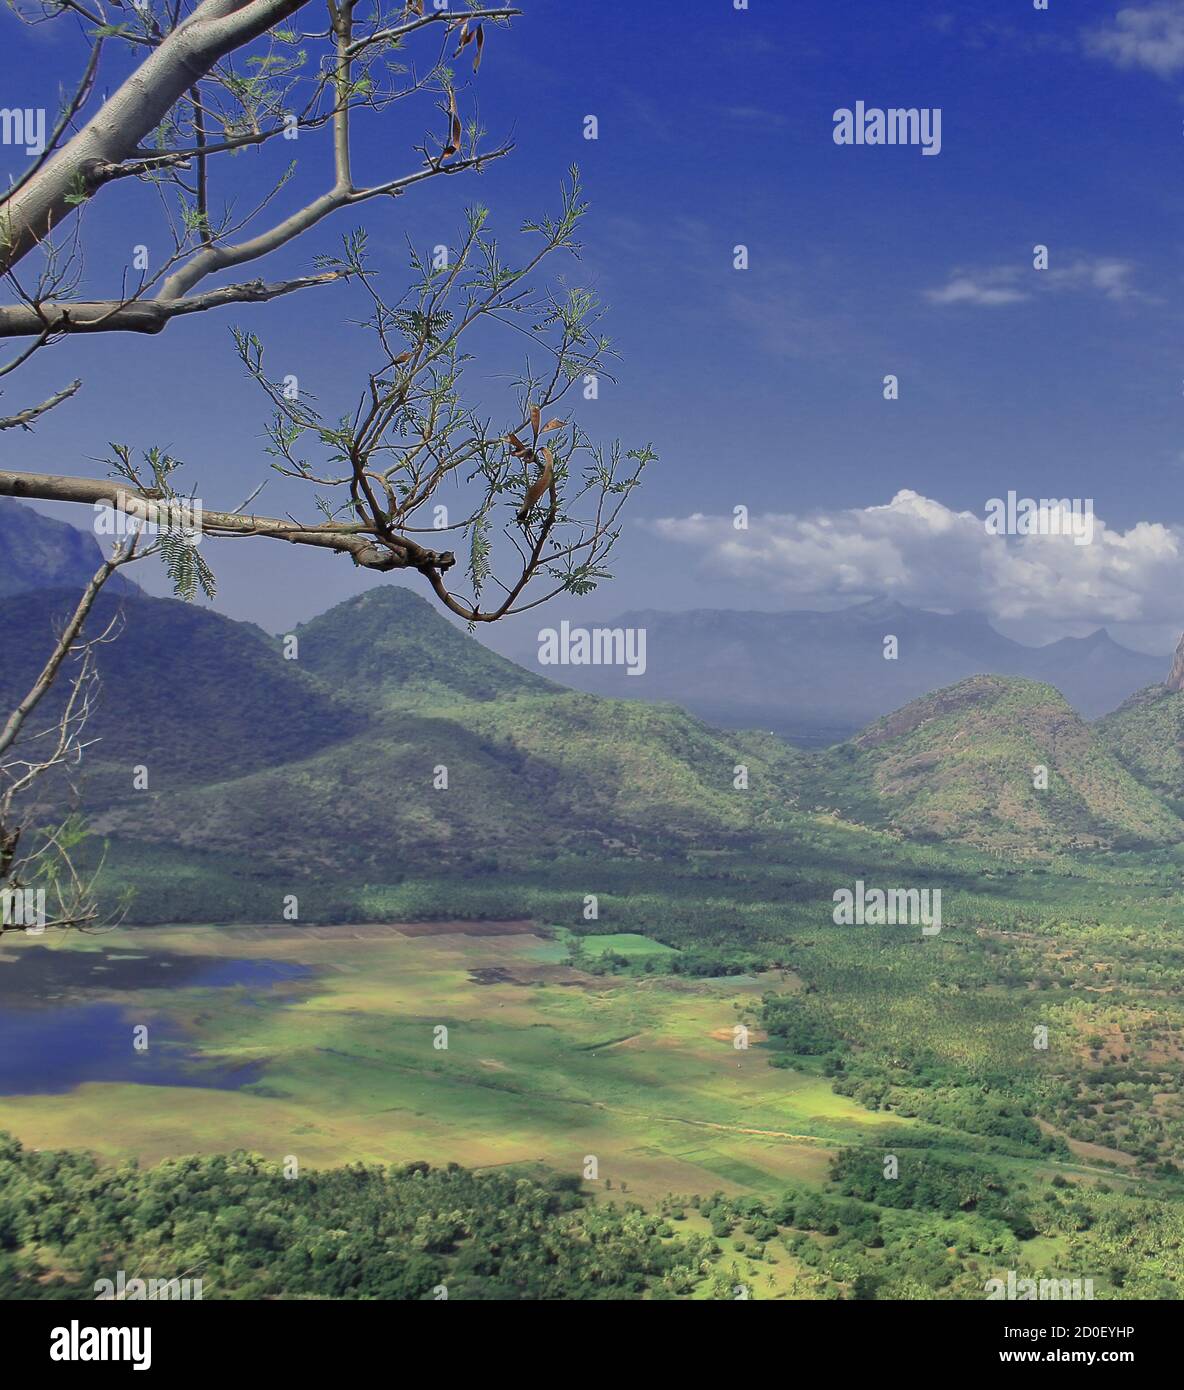 paisaje escénico de las colinas de palani, valle verde y la presa de manjalar vista desde un punto de vista en kodaikanal en tamilnadu, sur de la india Foto de stock